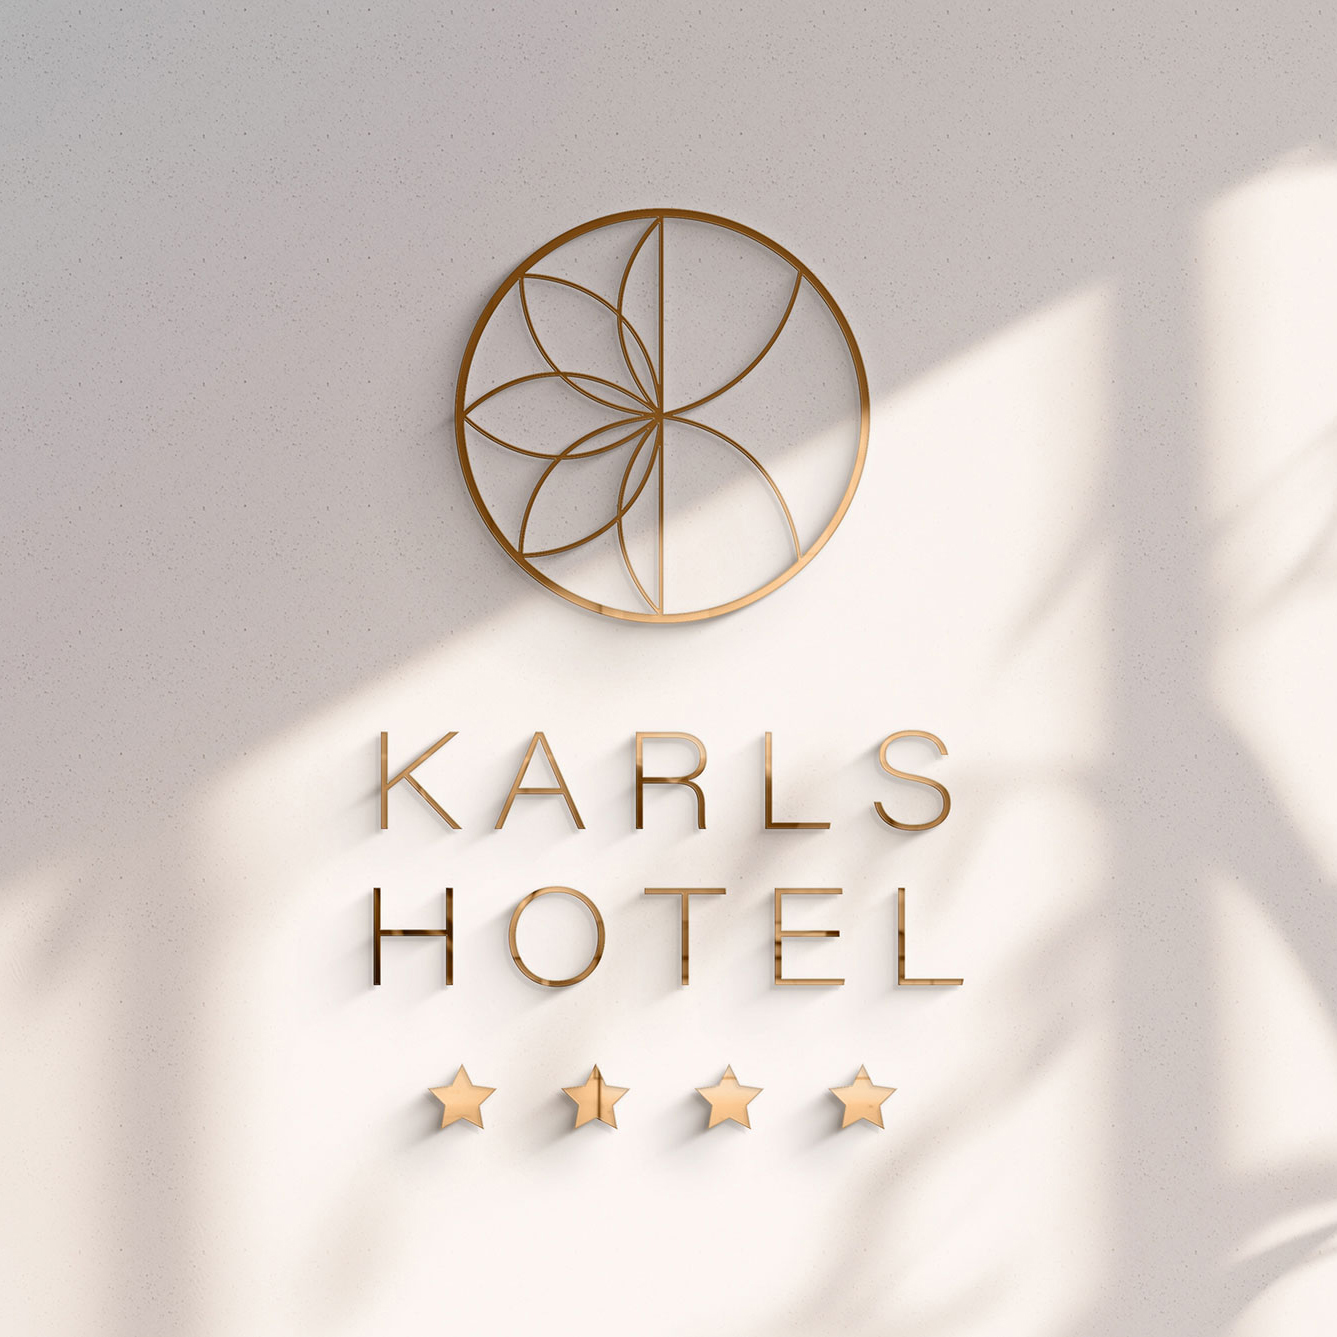 Karls Hotel in Sigmaringen